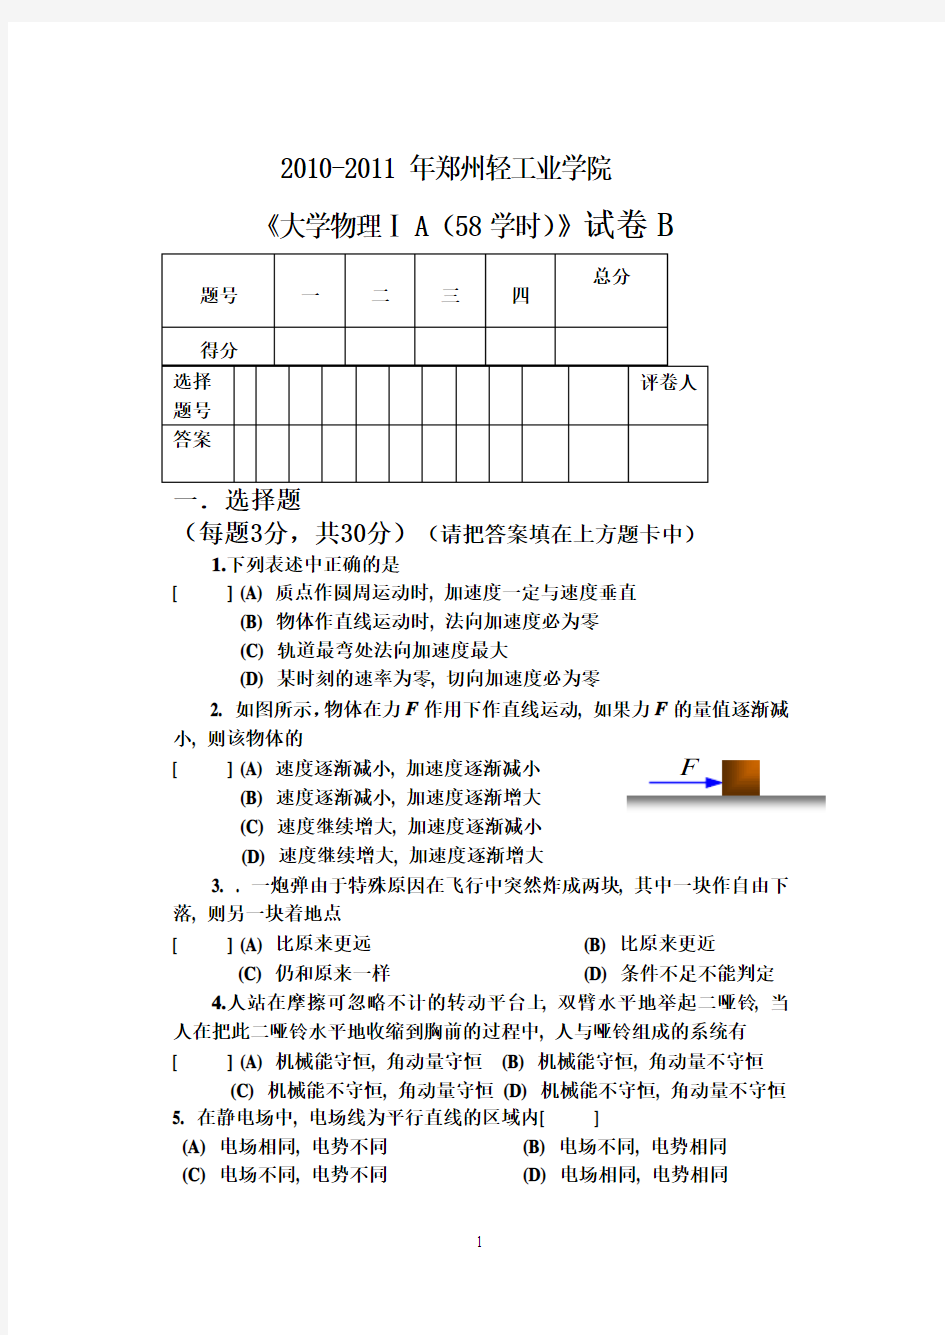 郑州轻工业学院2010-2011年大学物理A期末考试试卷分析